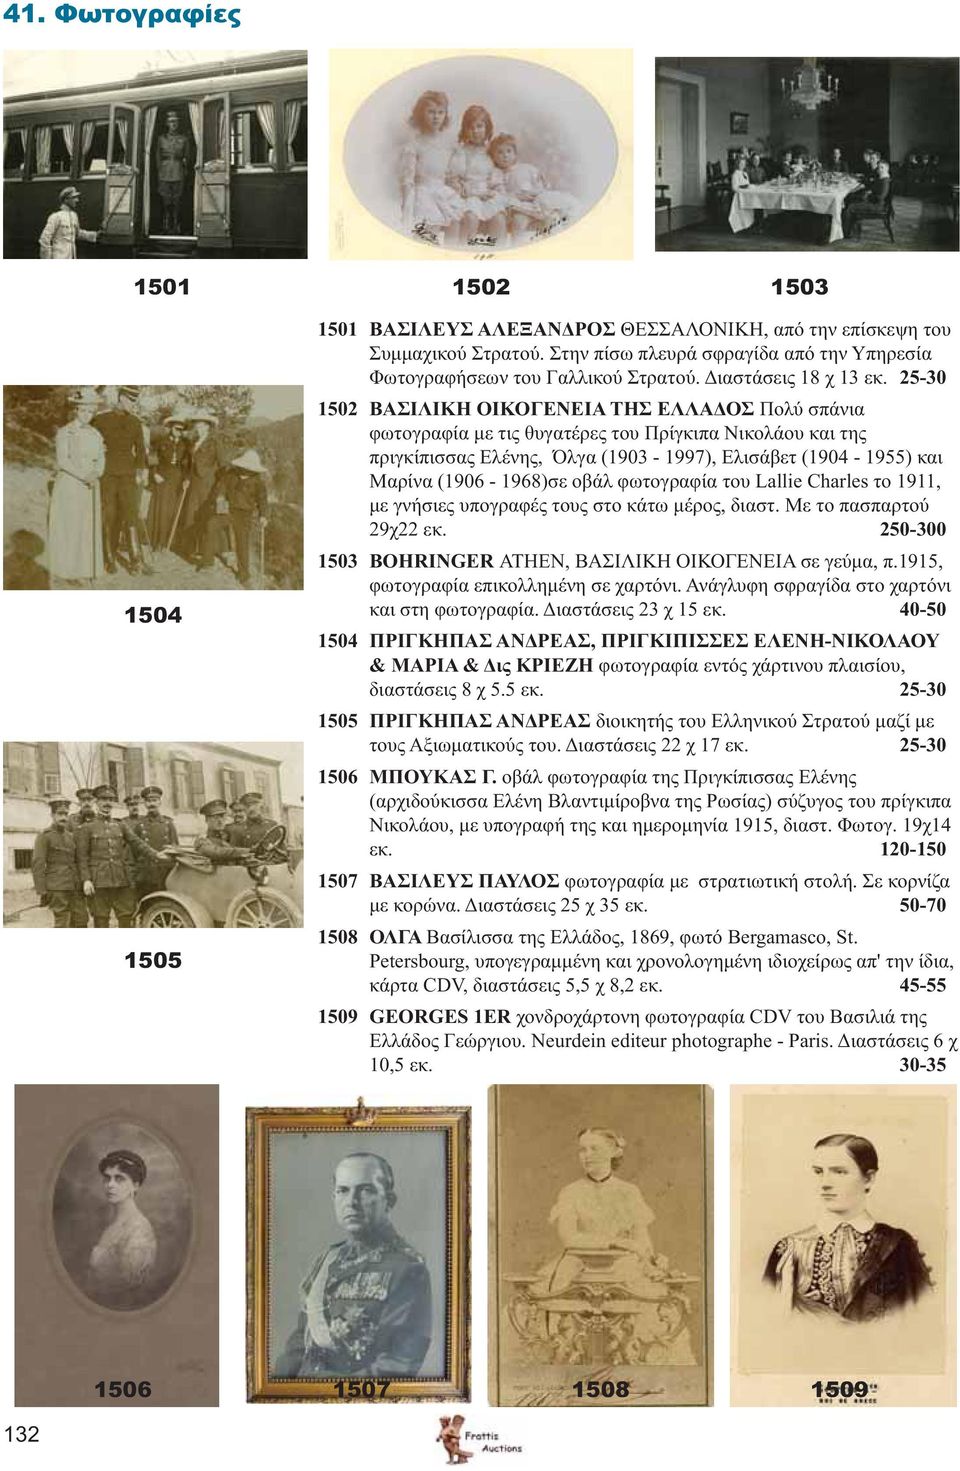 25-30 1502 ΒΑΣΙΛΙΚΗ ΟΙΚΟΓΕΝΕΙΑ ΤΗΣ ΕΛΛΑΔΟΣ Πολύ σπάνια φωτογραφία με τις θυγατέρες του Πρίγκιπα Νικολάου και της πριγκίπισσας Ελένης, Όλγα (1903-1997), Ελισάβετ (1904-1955) και Μαρίνα (1906-1968)σε